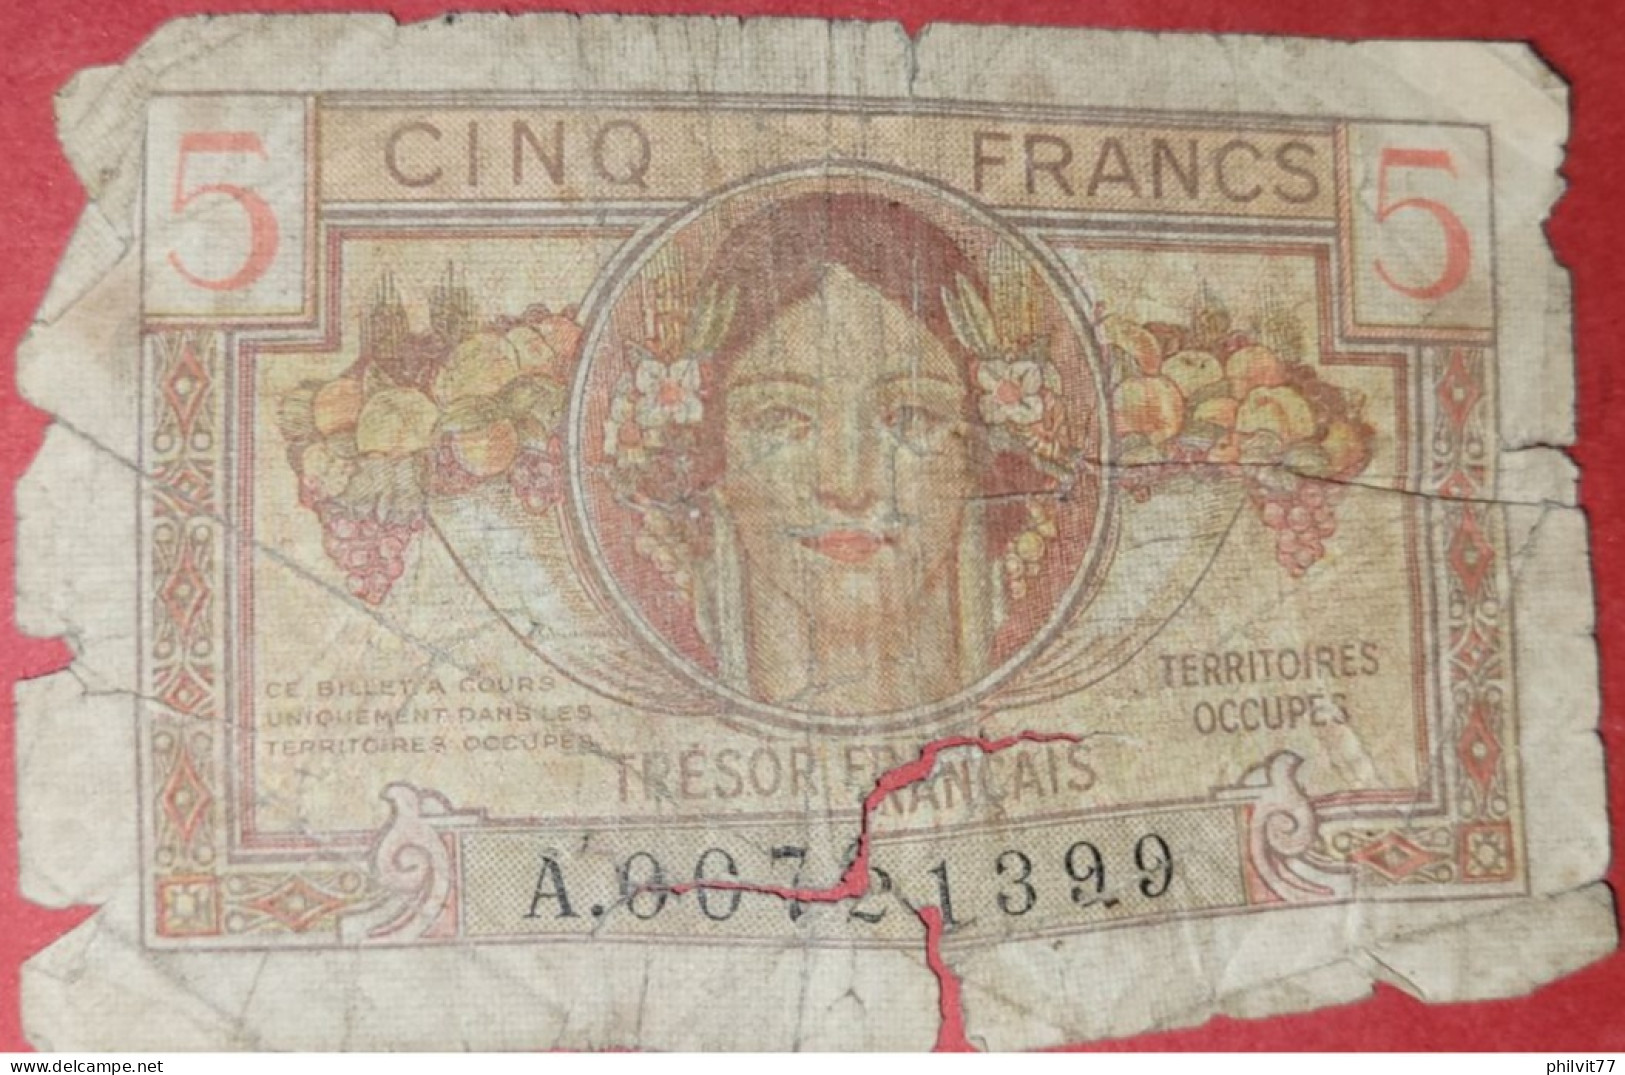 Cinq Francs Territoires Occupés Trésor Français 1947 - 1947 Trésor Français